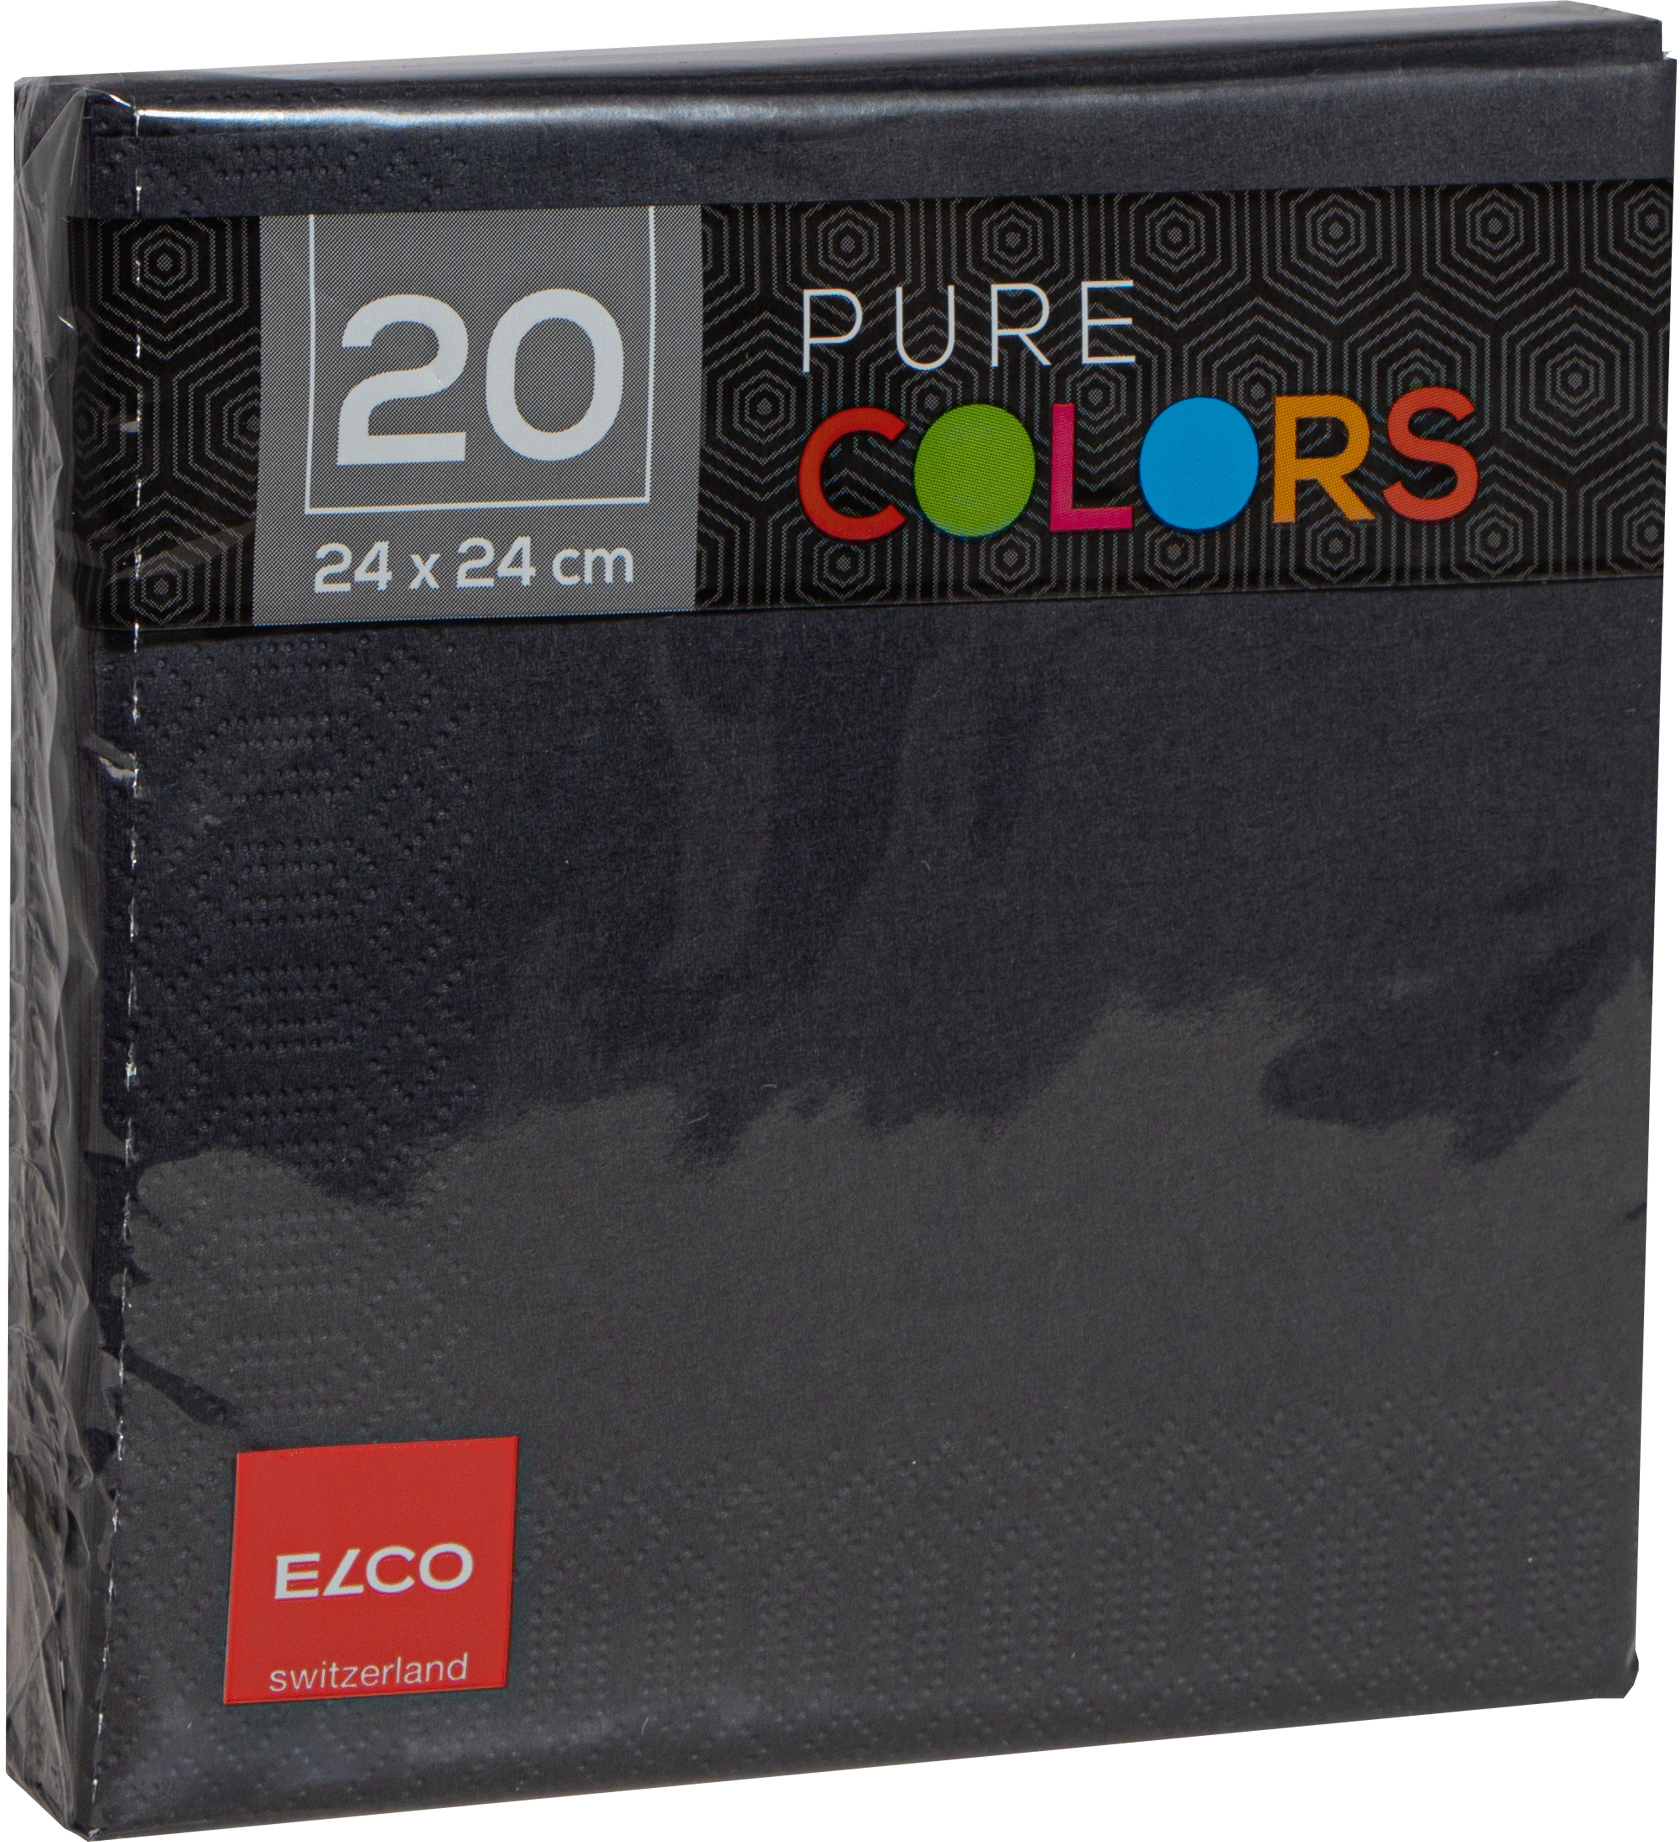 ELCO Serviettes tissue 24x24cm PC234020-090 3 plis, noir 20pcs.